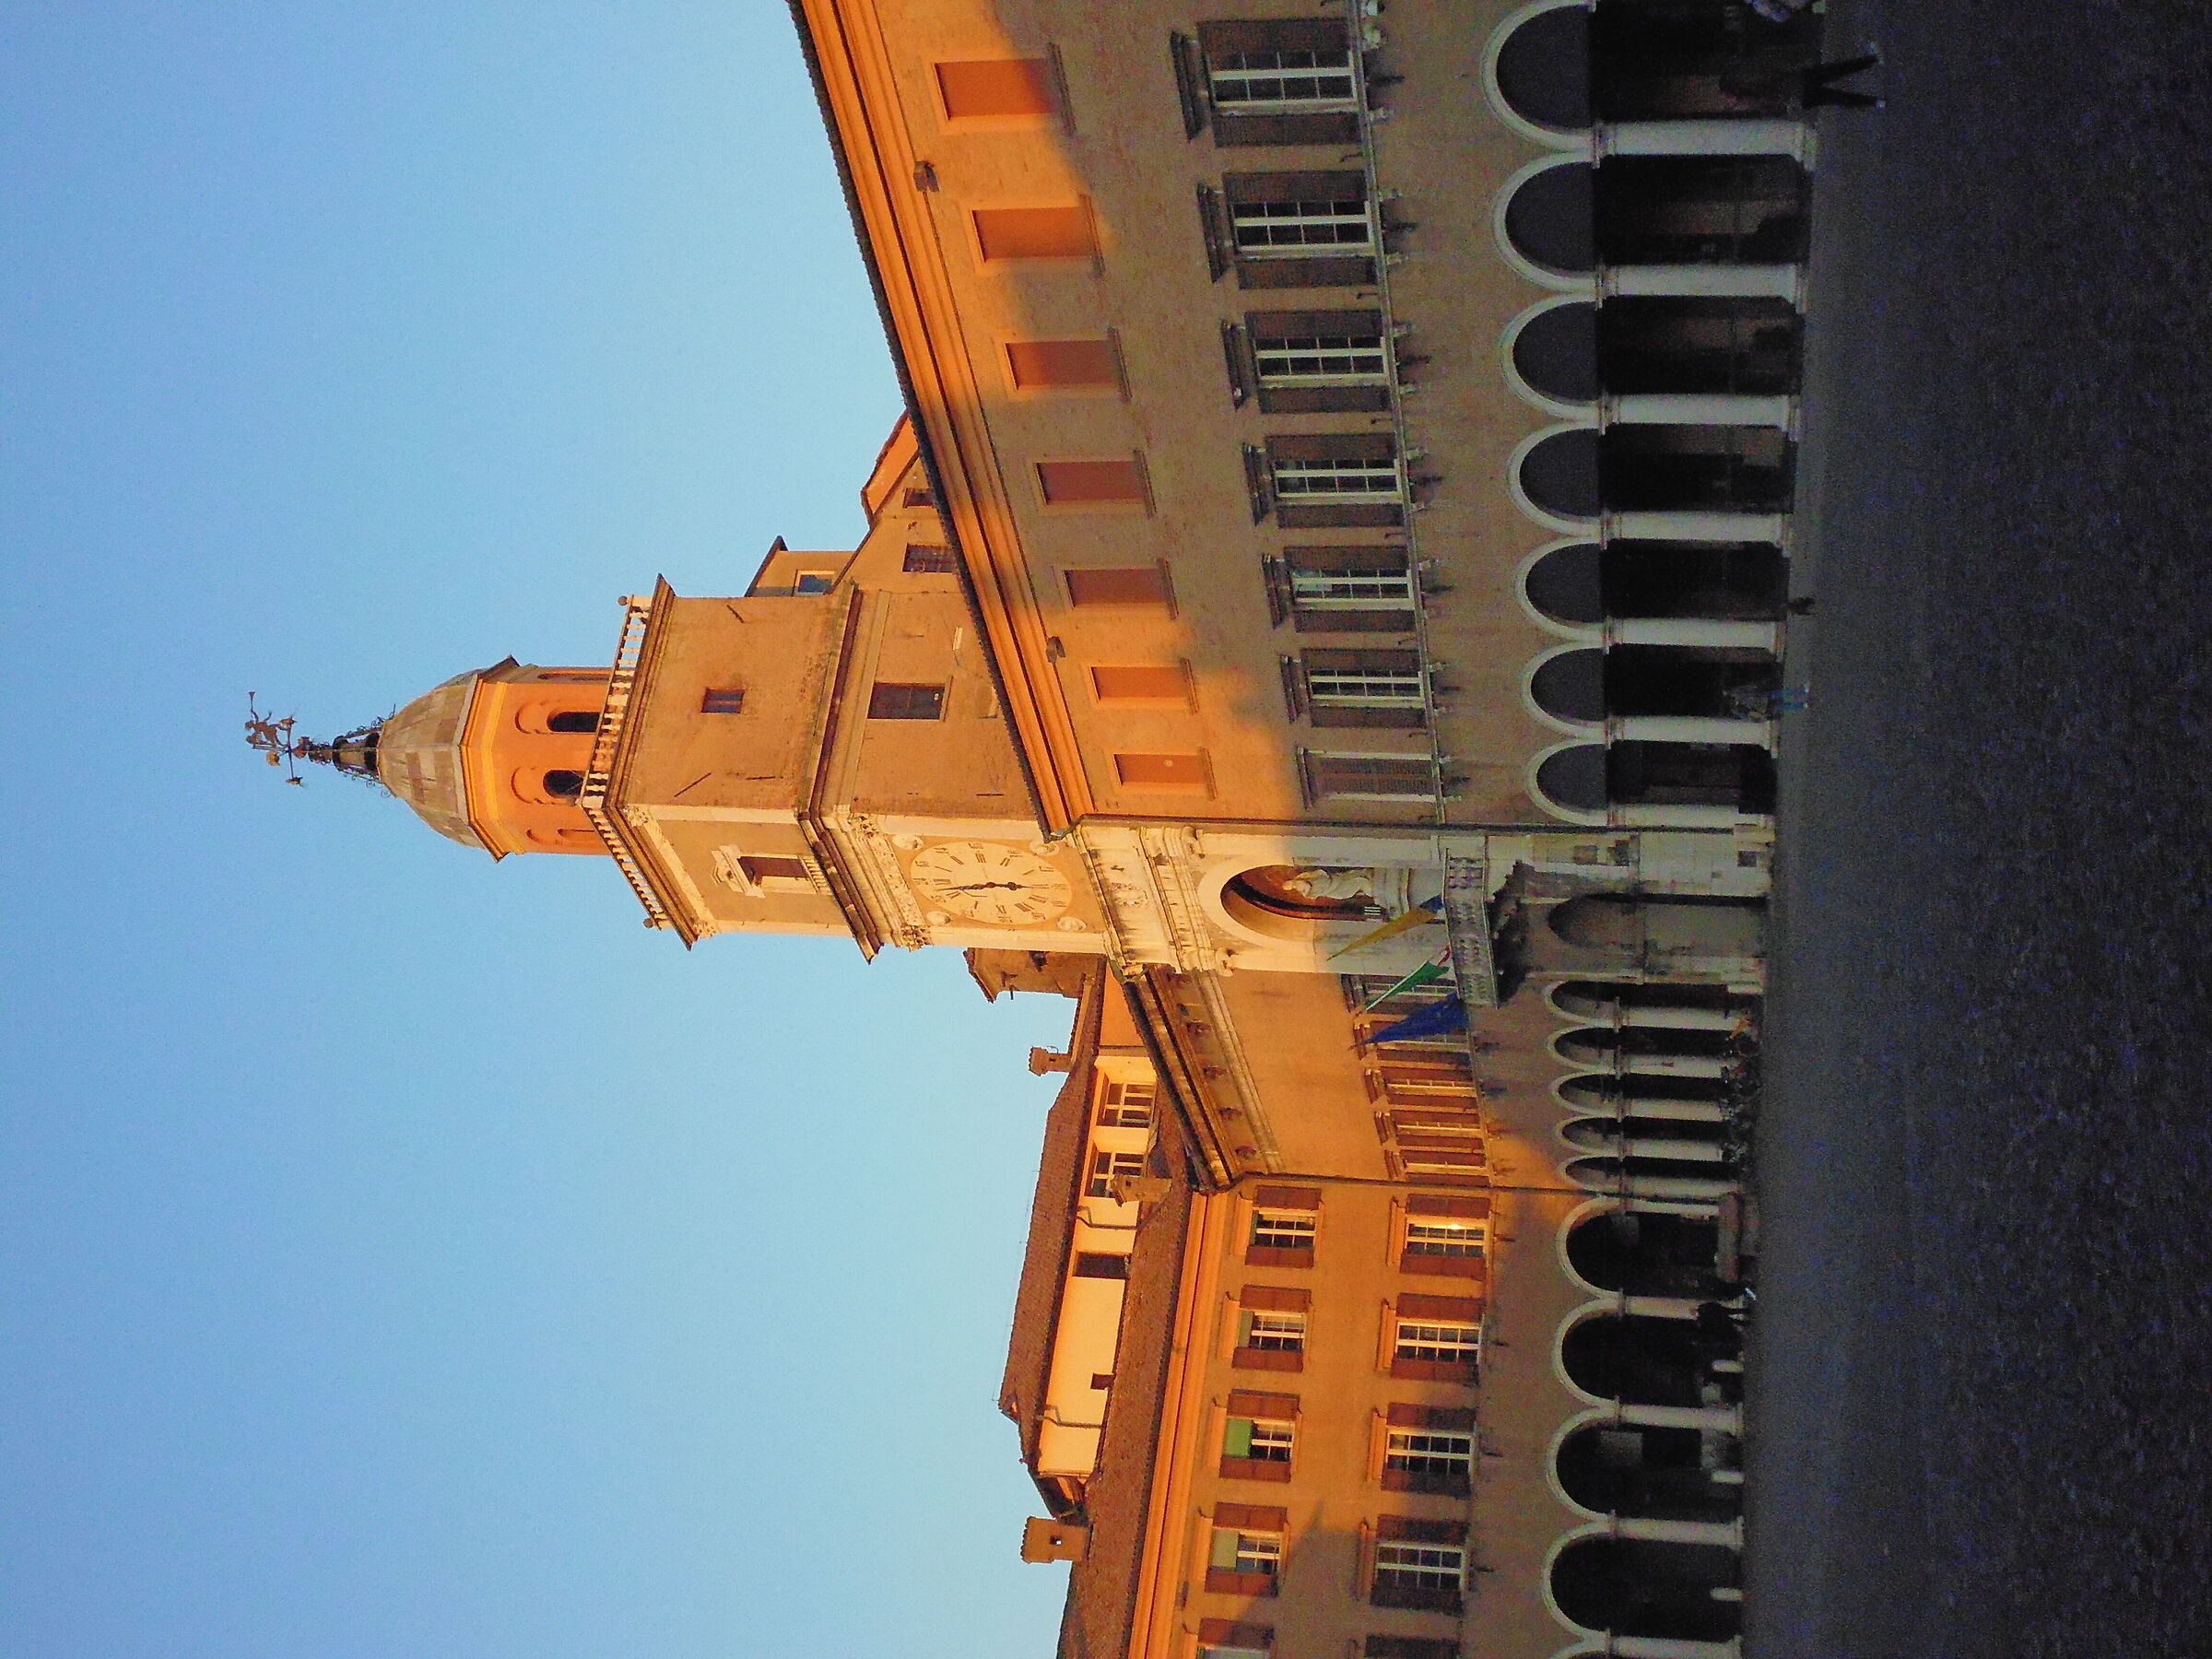 The Municipality of Modena...